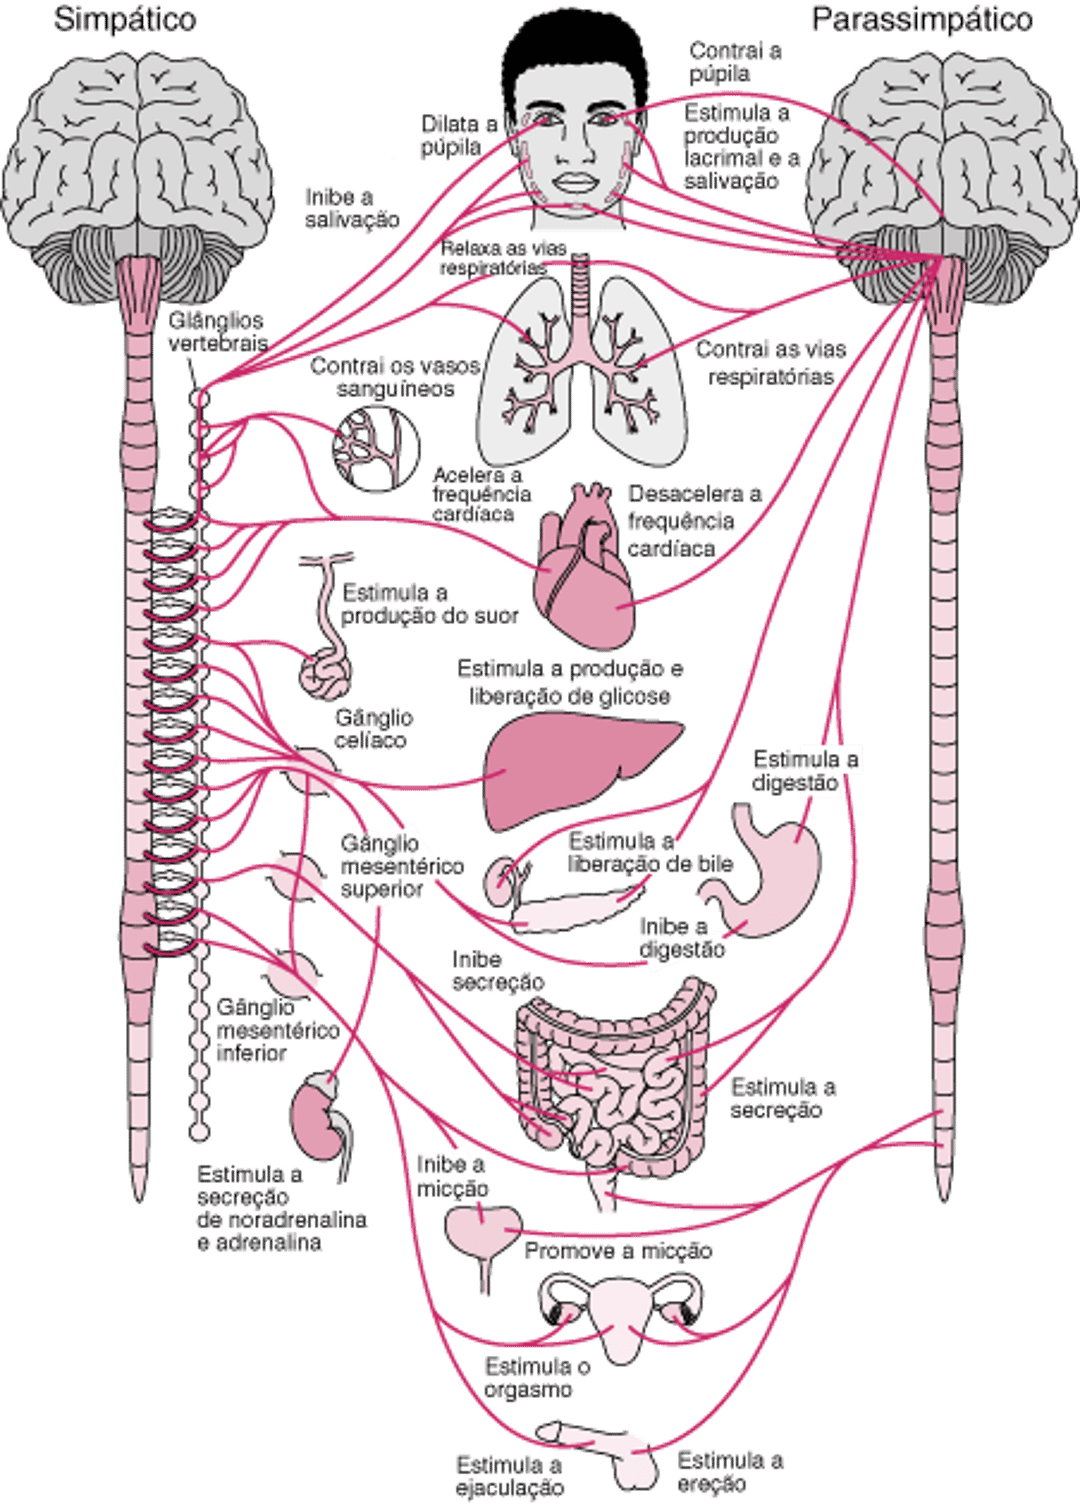 Sistema nervoso autônomo